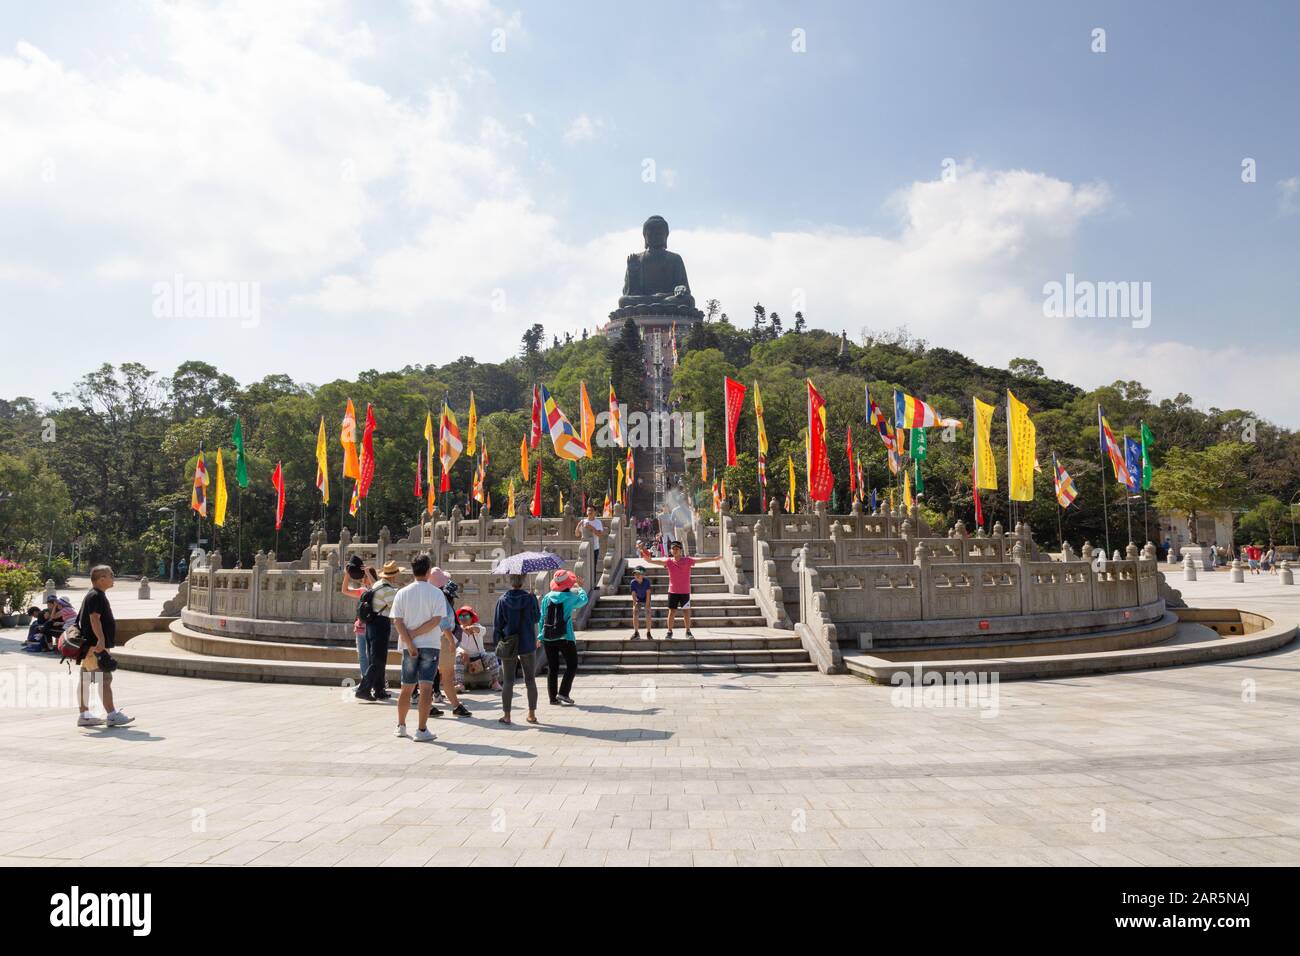 Hong Kong Tourismus - Touristen im großen Lantau Buddha oder Tian Tan Sitzing buddha Statue, Ngong Ping, Lantau Insel, Hong Kong Asien Stockfoto